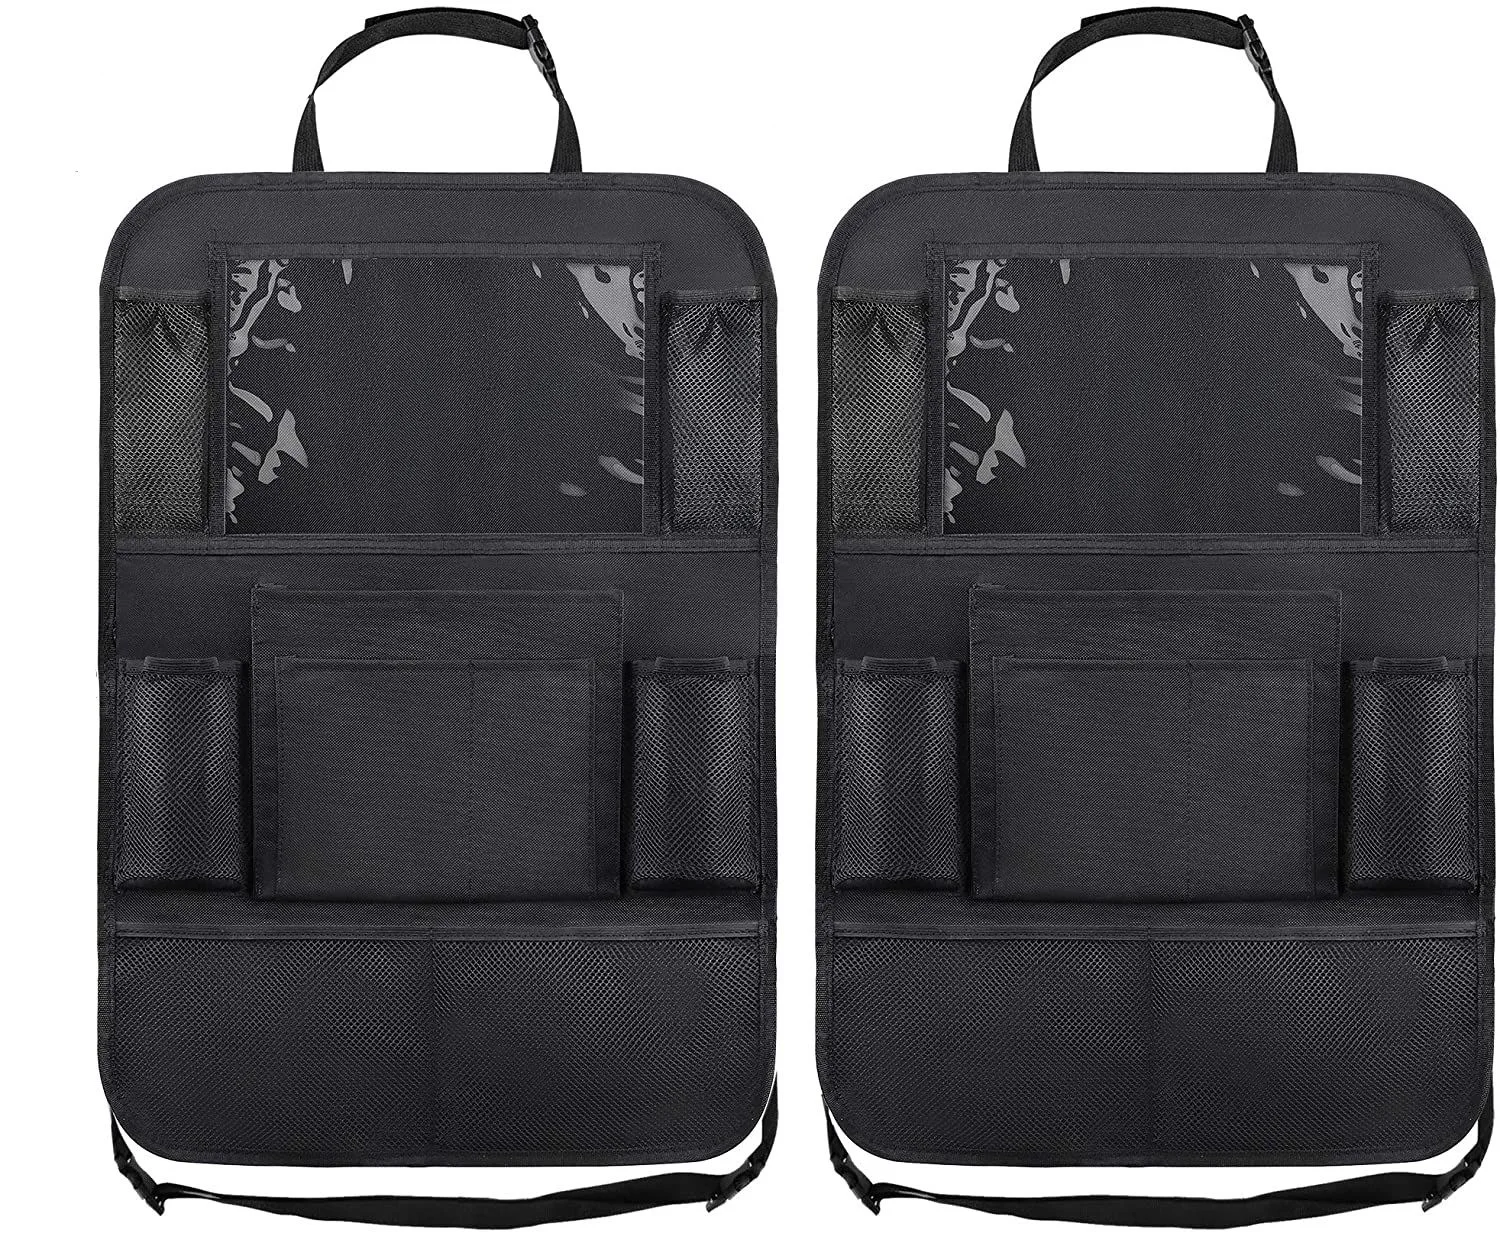 Органайзер для детского автокресла из многофункциональной ткани Оксфорд, сумка для хранения на заднем сиденье автомобиля с несколькими карманами, чехол для планшета для малыша